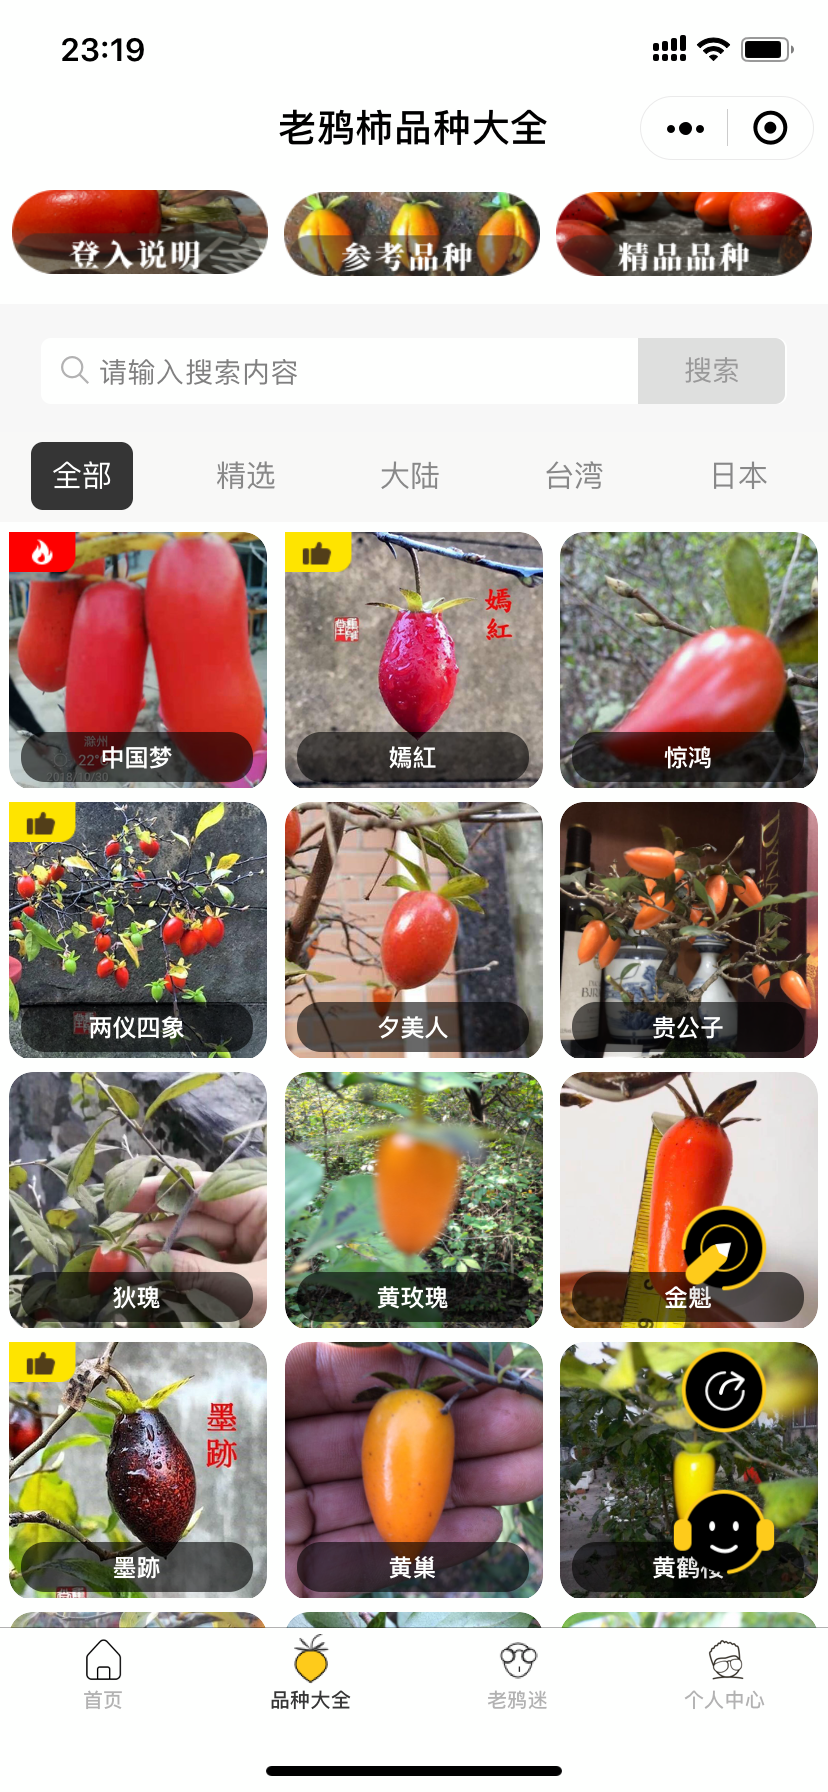 日本老鸦柿品种图册图片